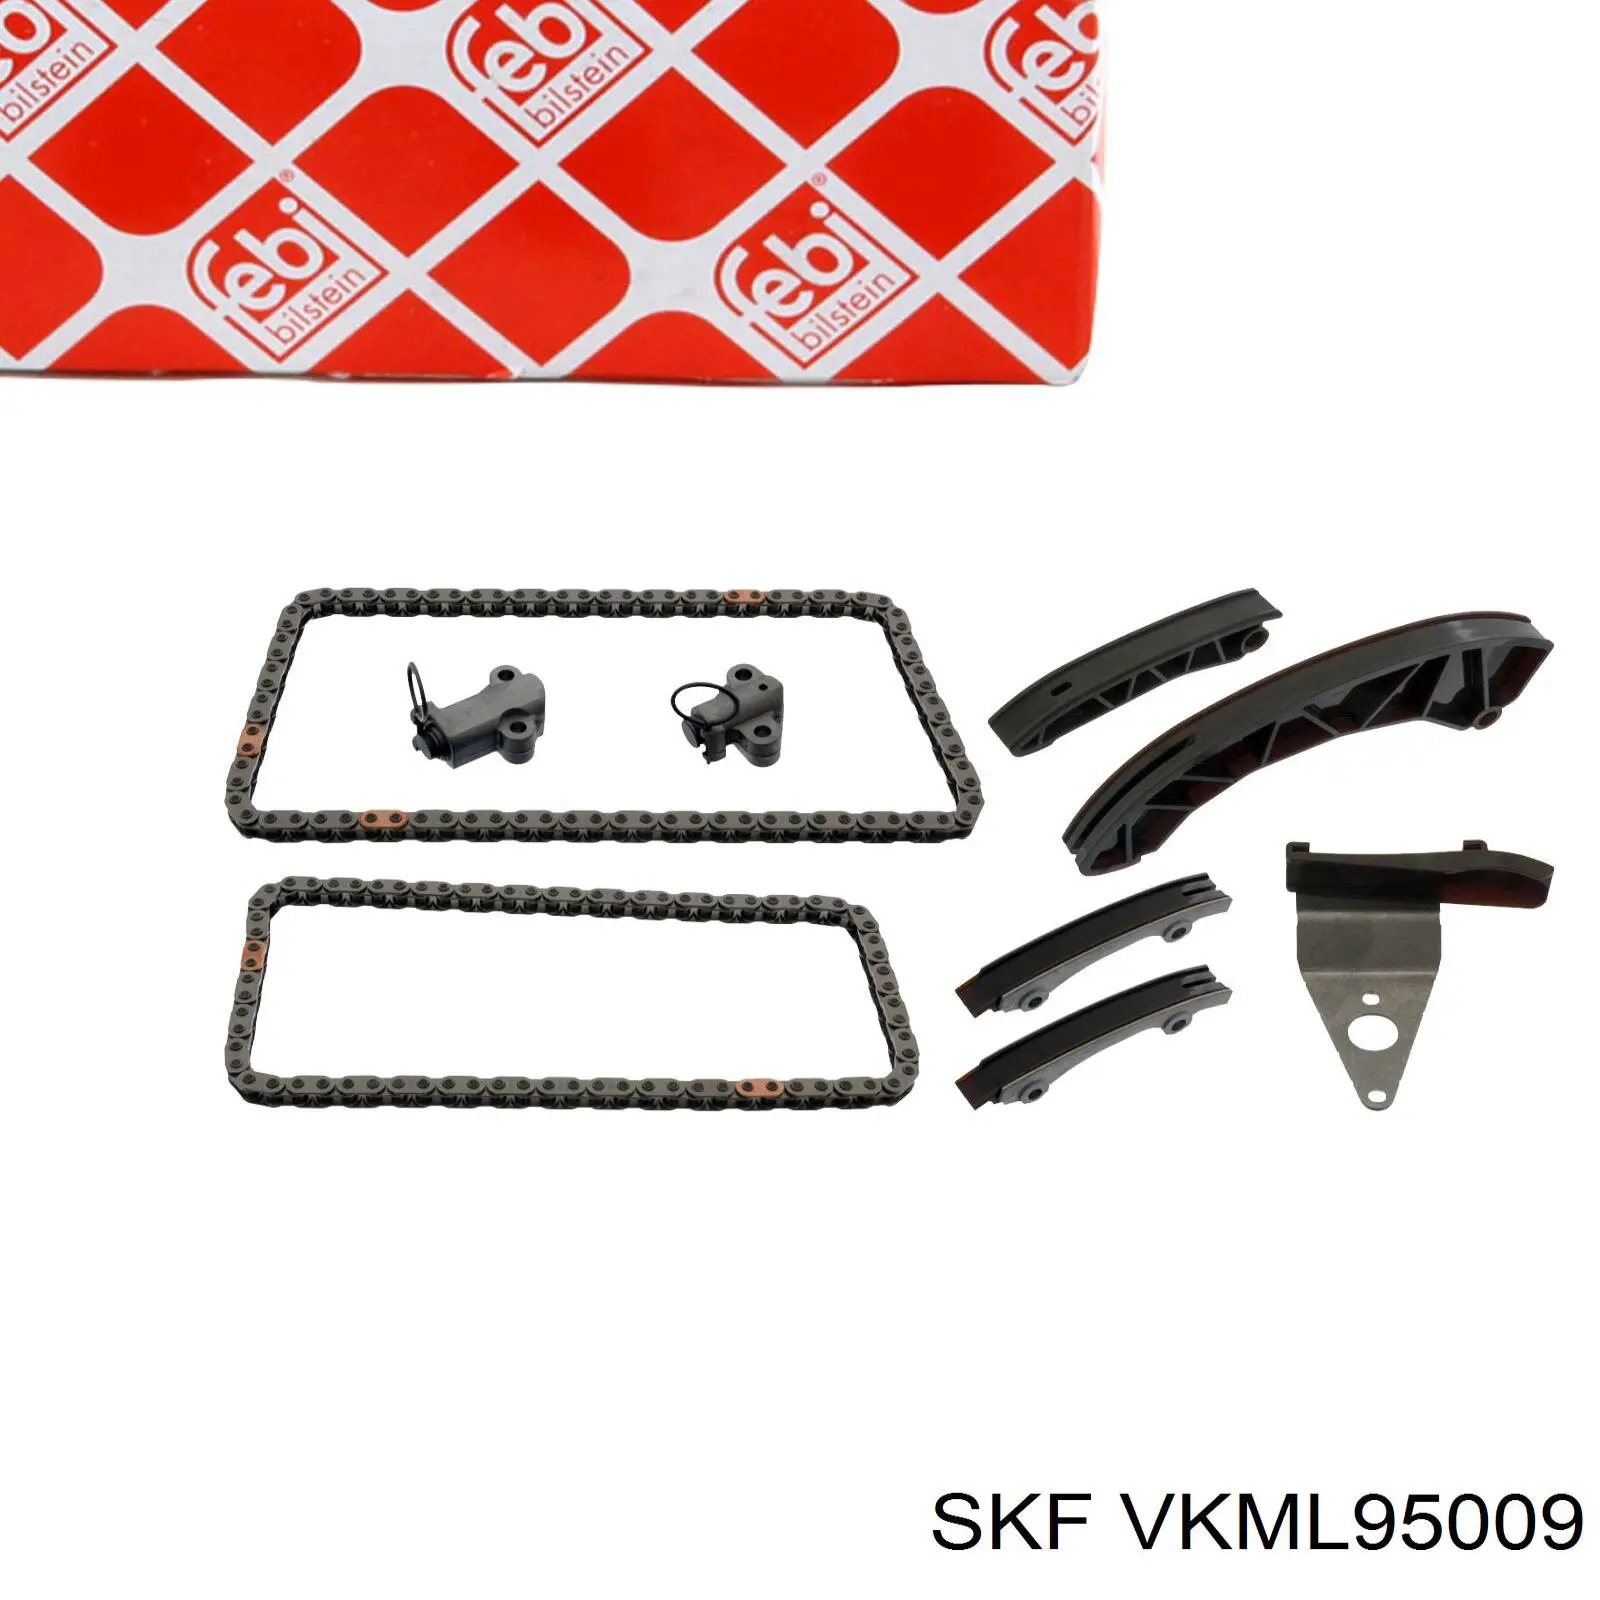 VKML95009 SKF ланцюг грм, комплект